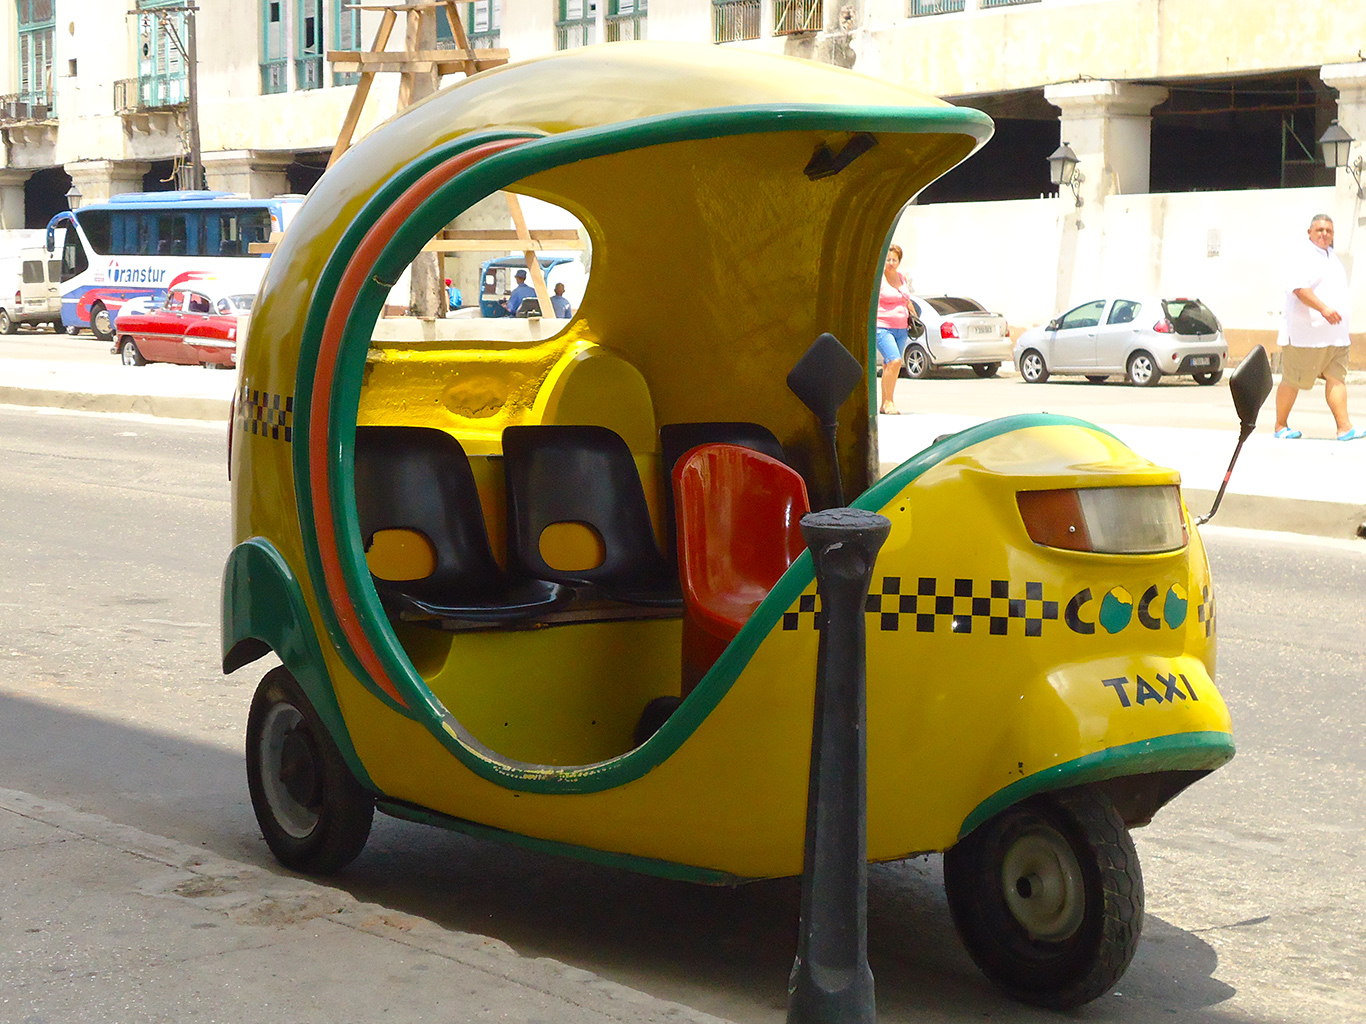 Coco taxi jsou žlutá vozítka podobná kokosovému ořechu